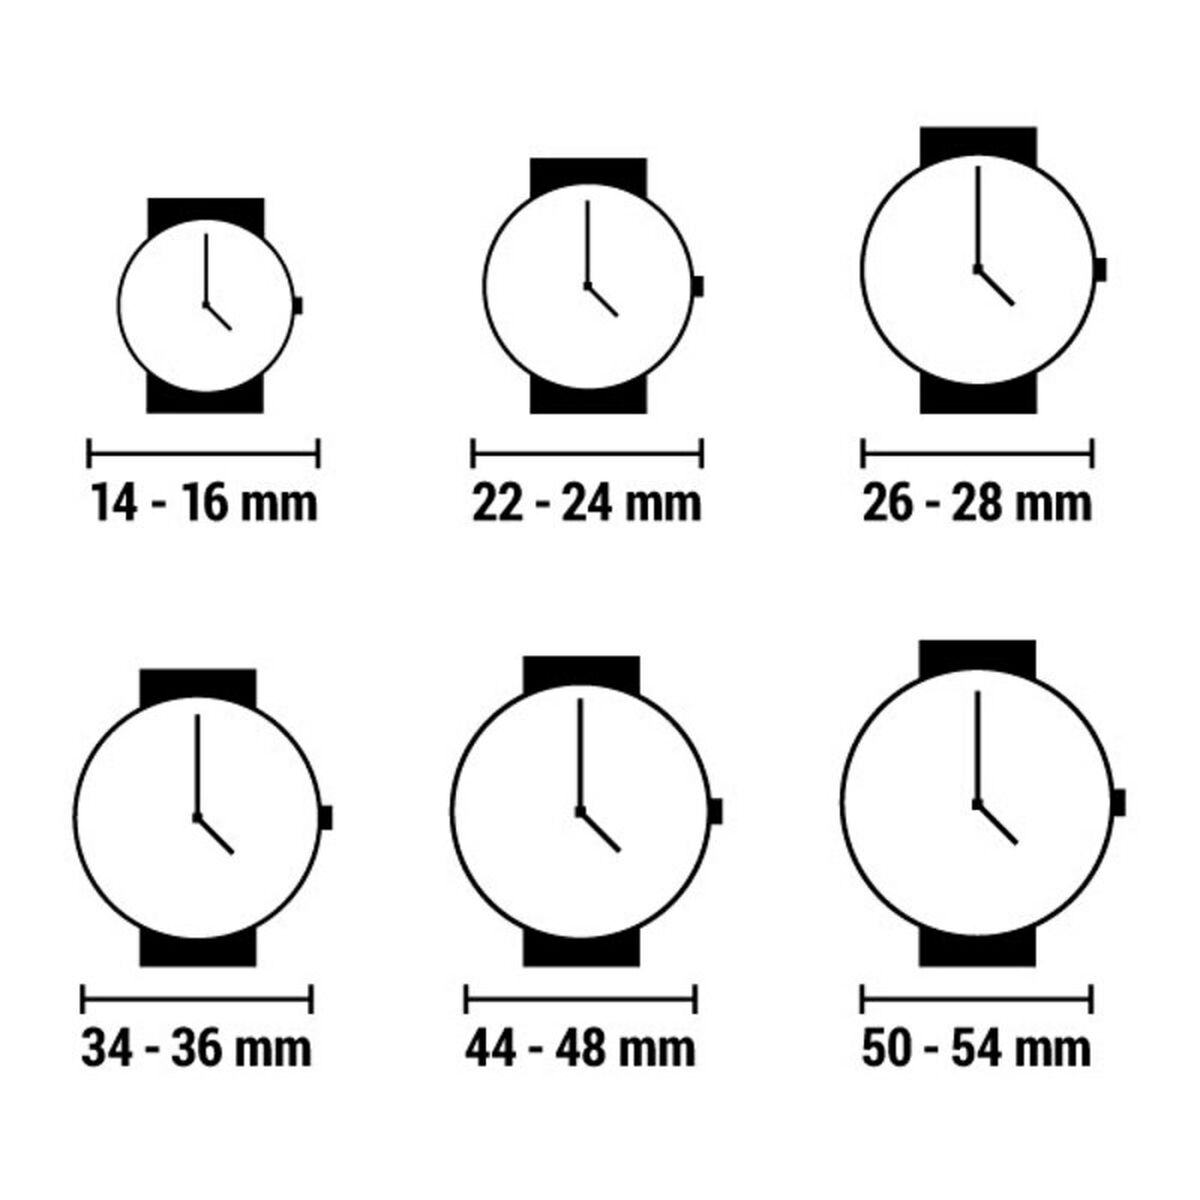 Horloge Dames Time Force TF2568L (Ø 21 mm)